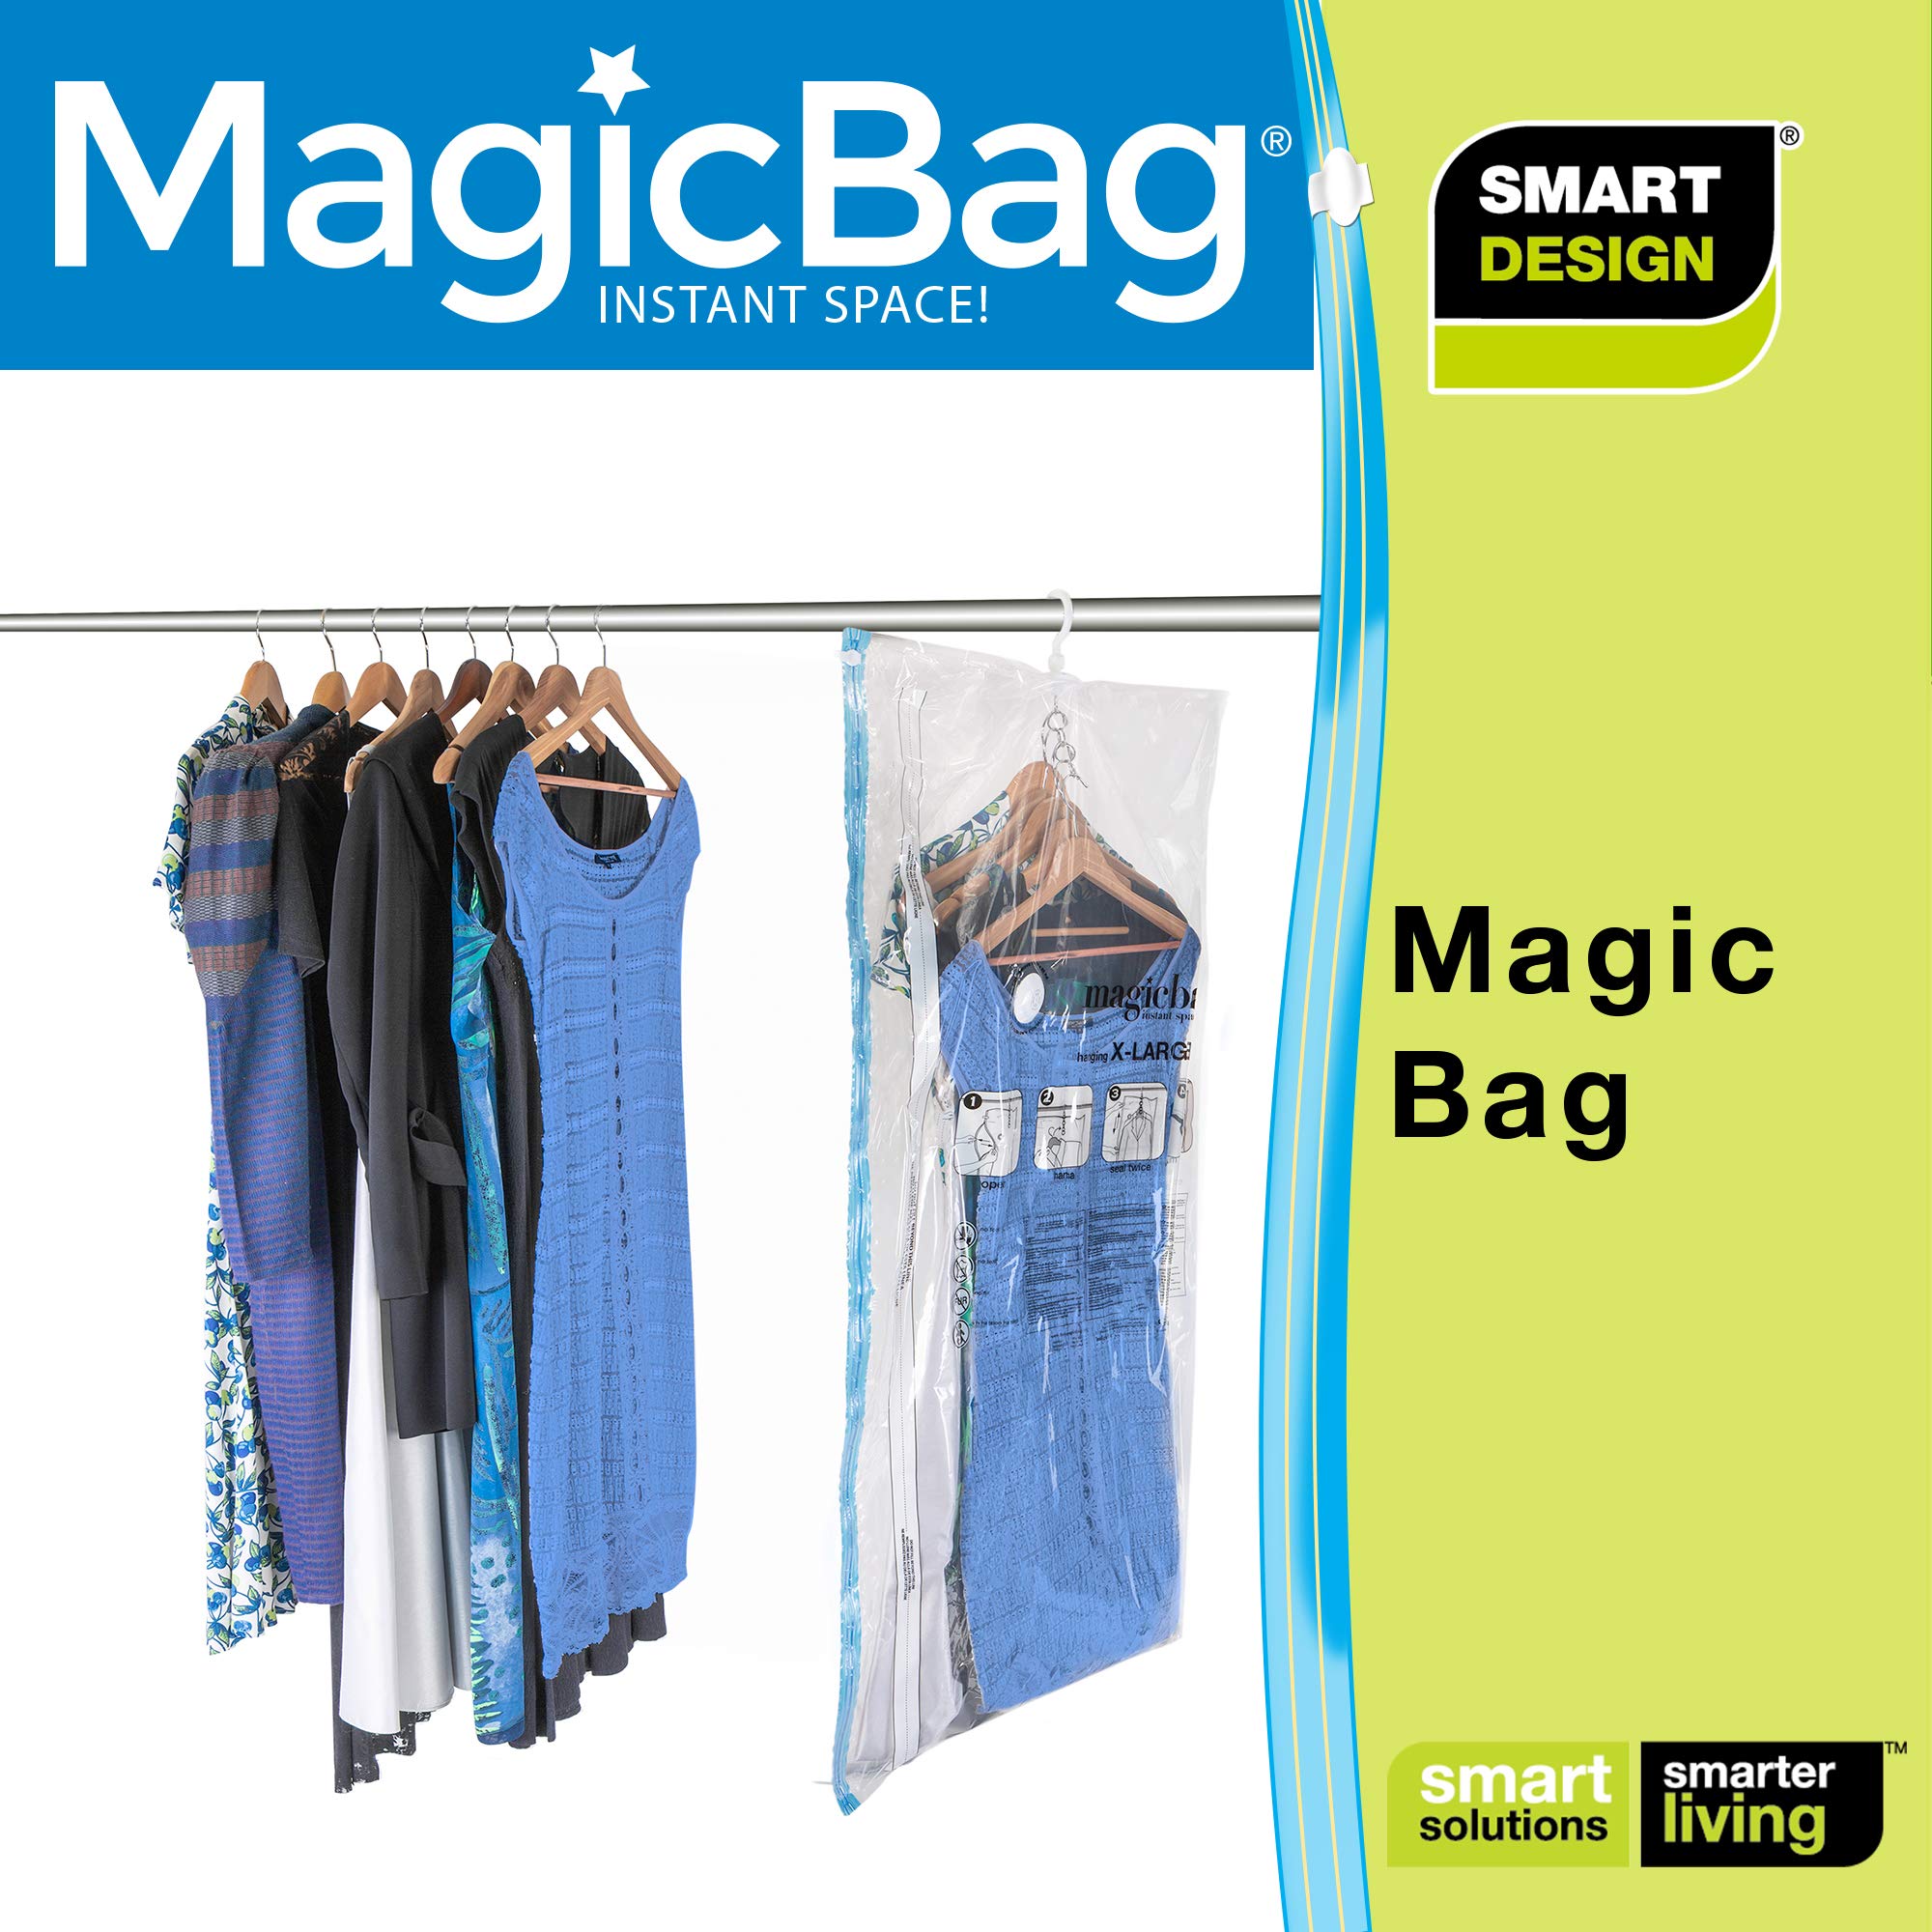 https://www.shopsmartdesign.com/cdn/shop/products/magicbag-instant-space-saver-storage-hanging-extra-large-smart-design-magicbag-5942412as2-incrementing-number-844857.jpg?v=1679340412